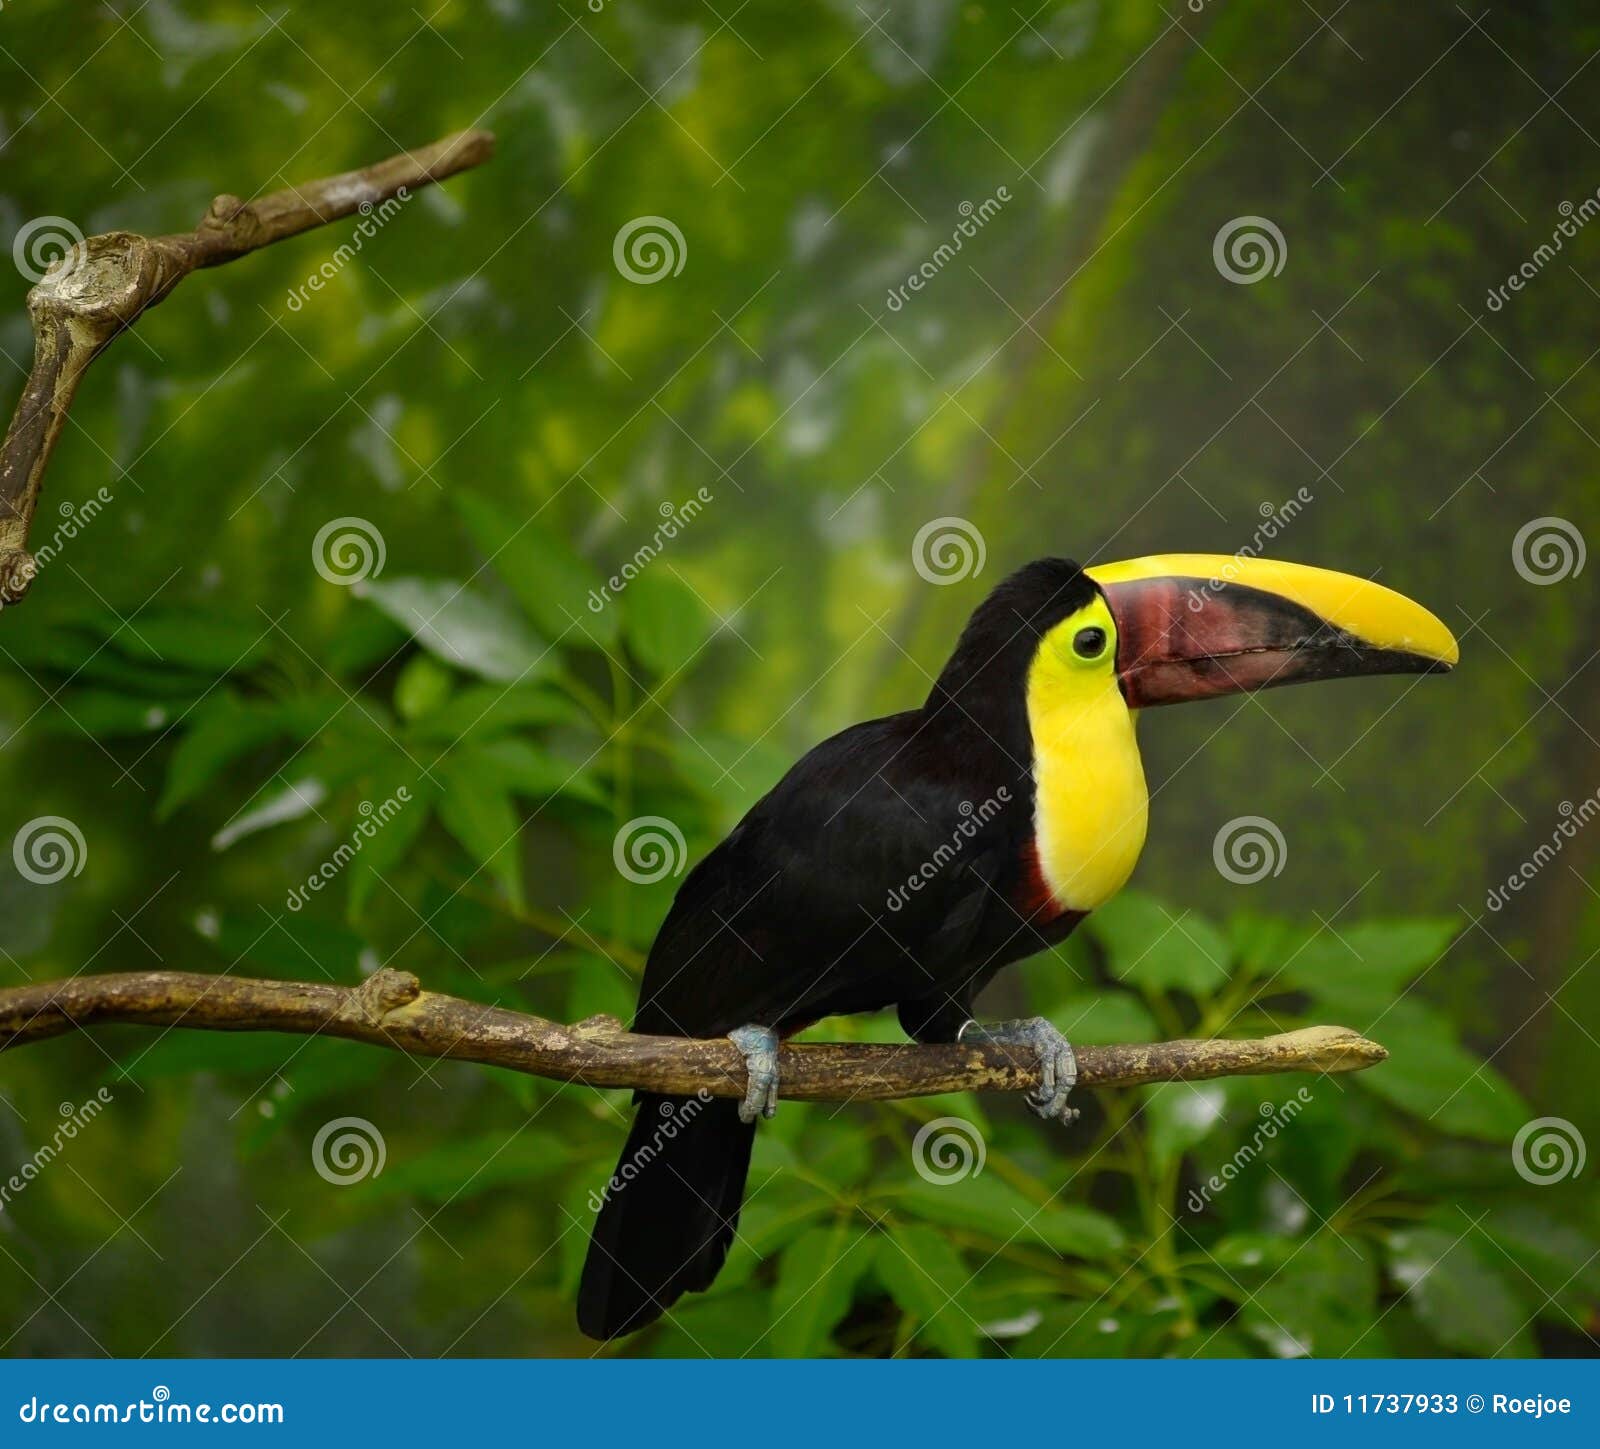 toucan bird on limb